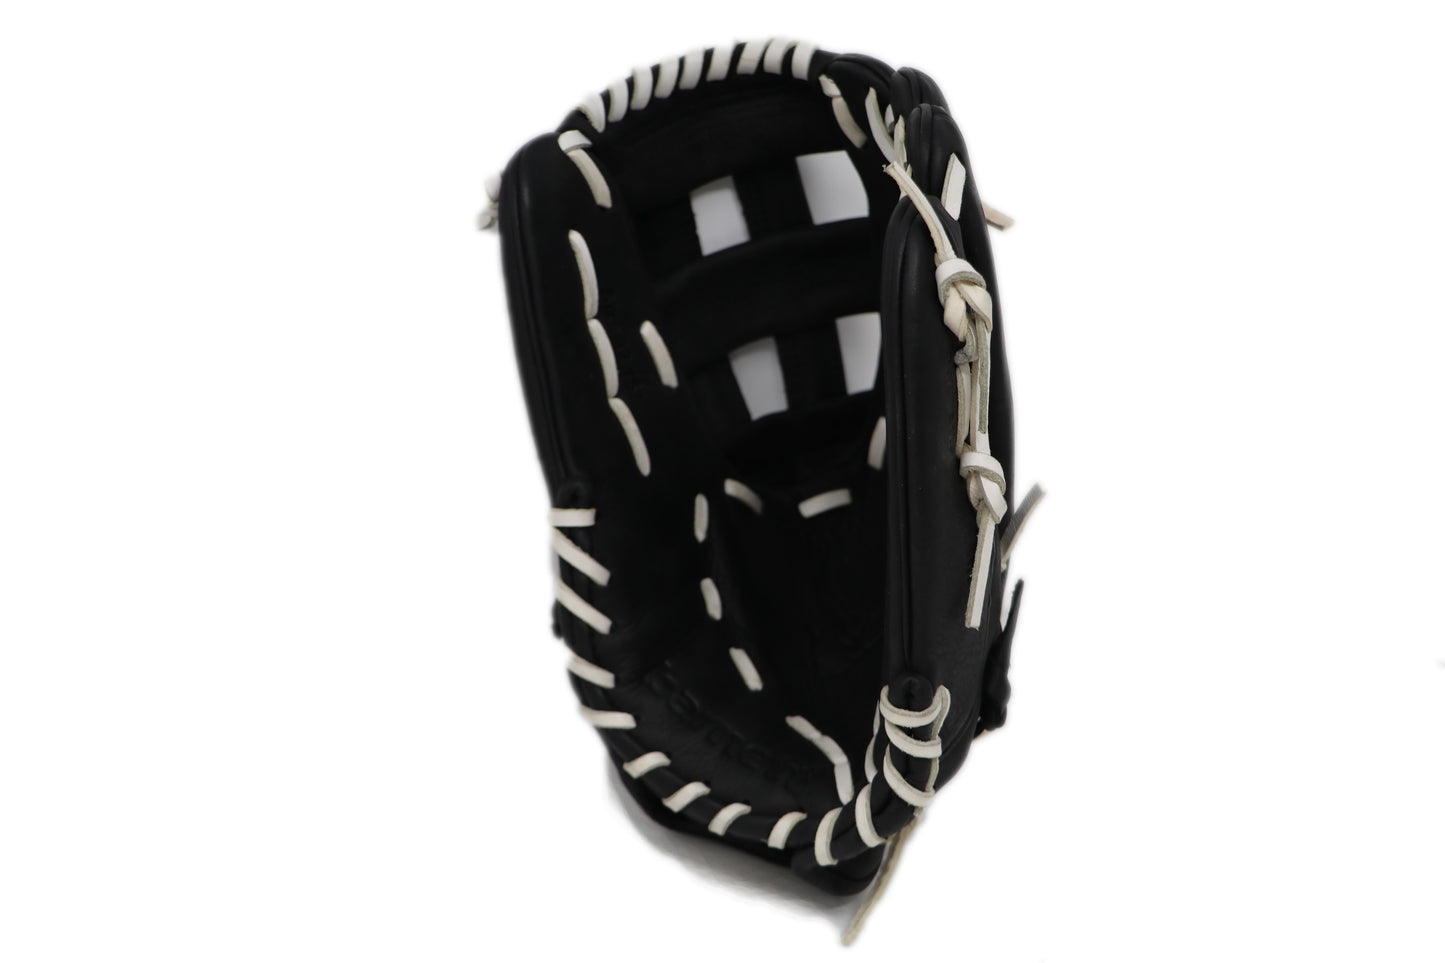 Gant de baseball de compétition GL-127, cuir véritable, champ extérieur 12,7, noir